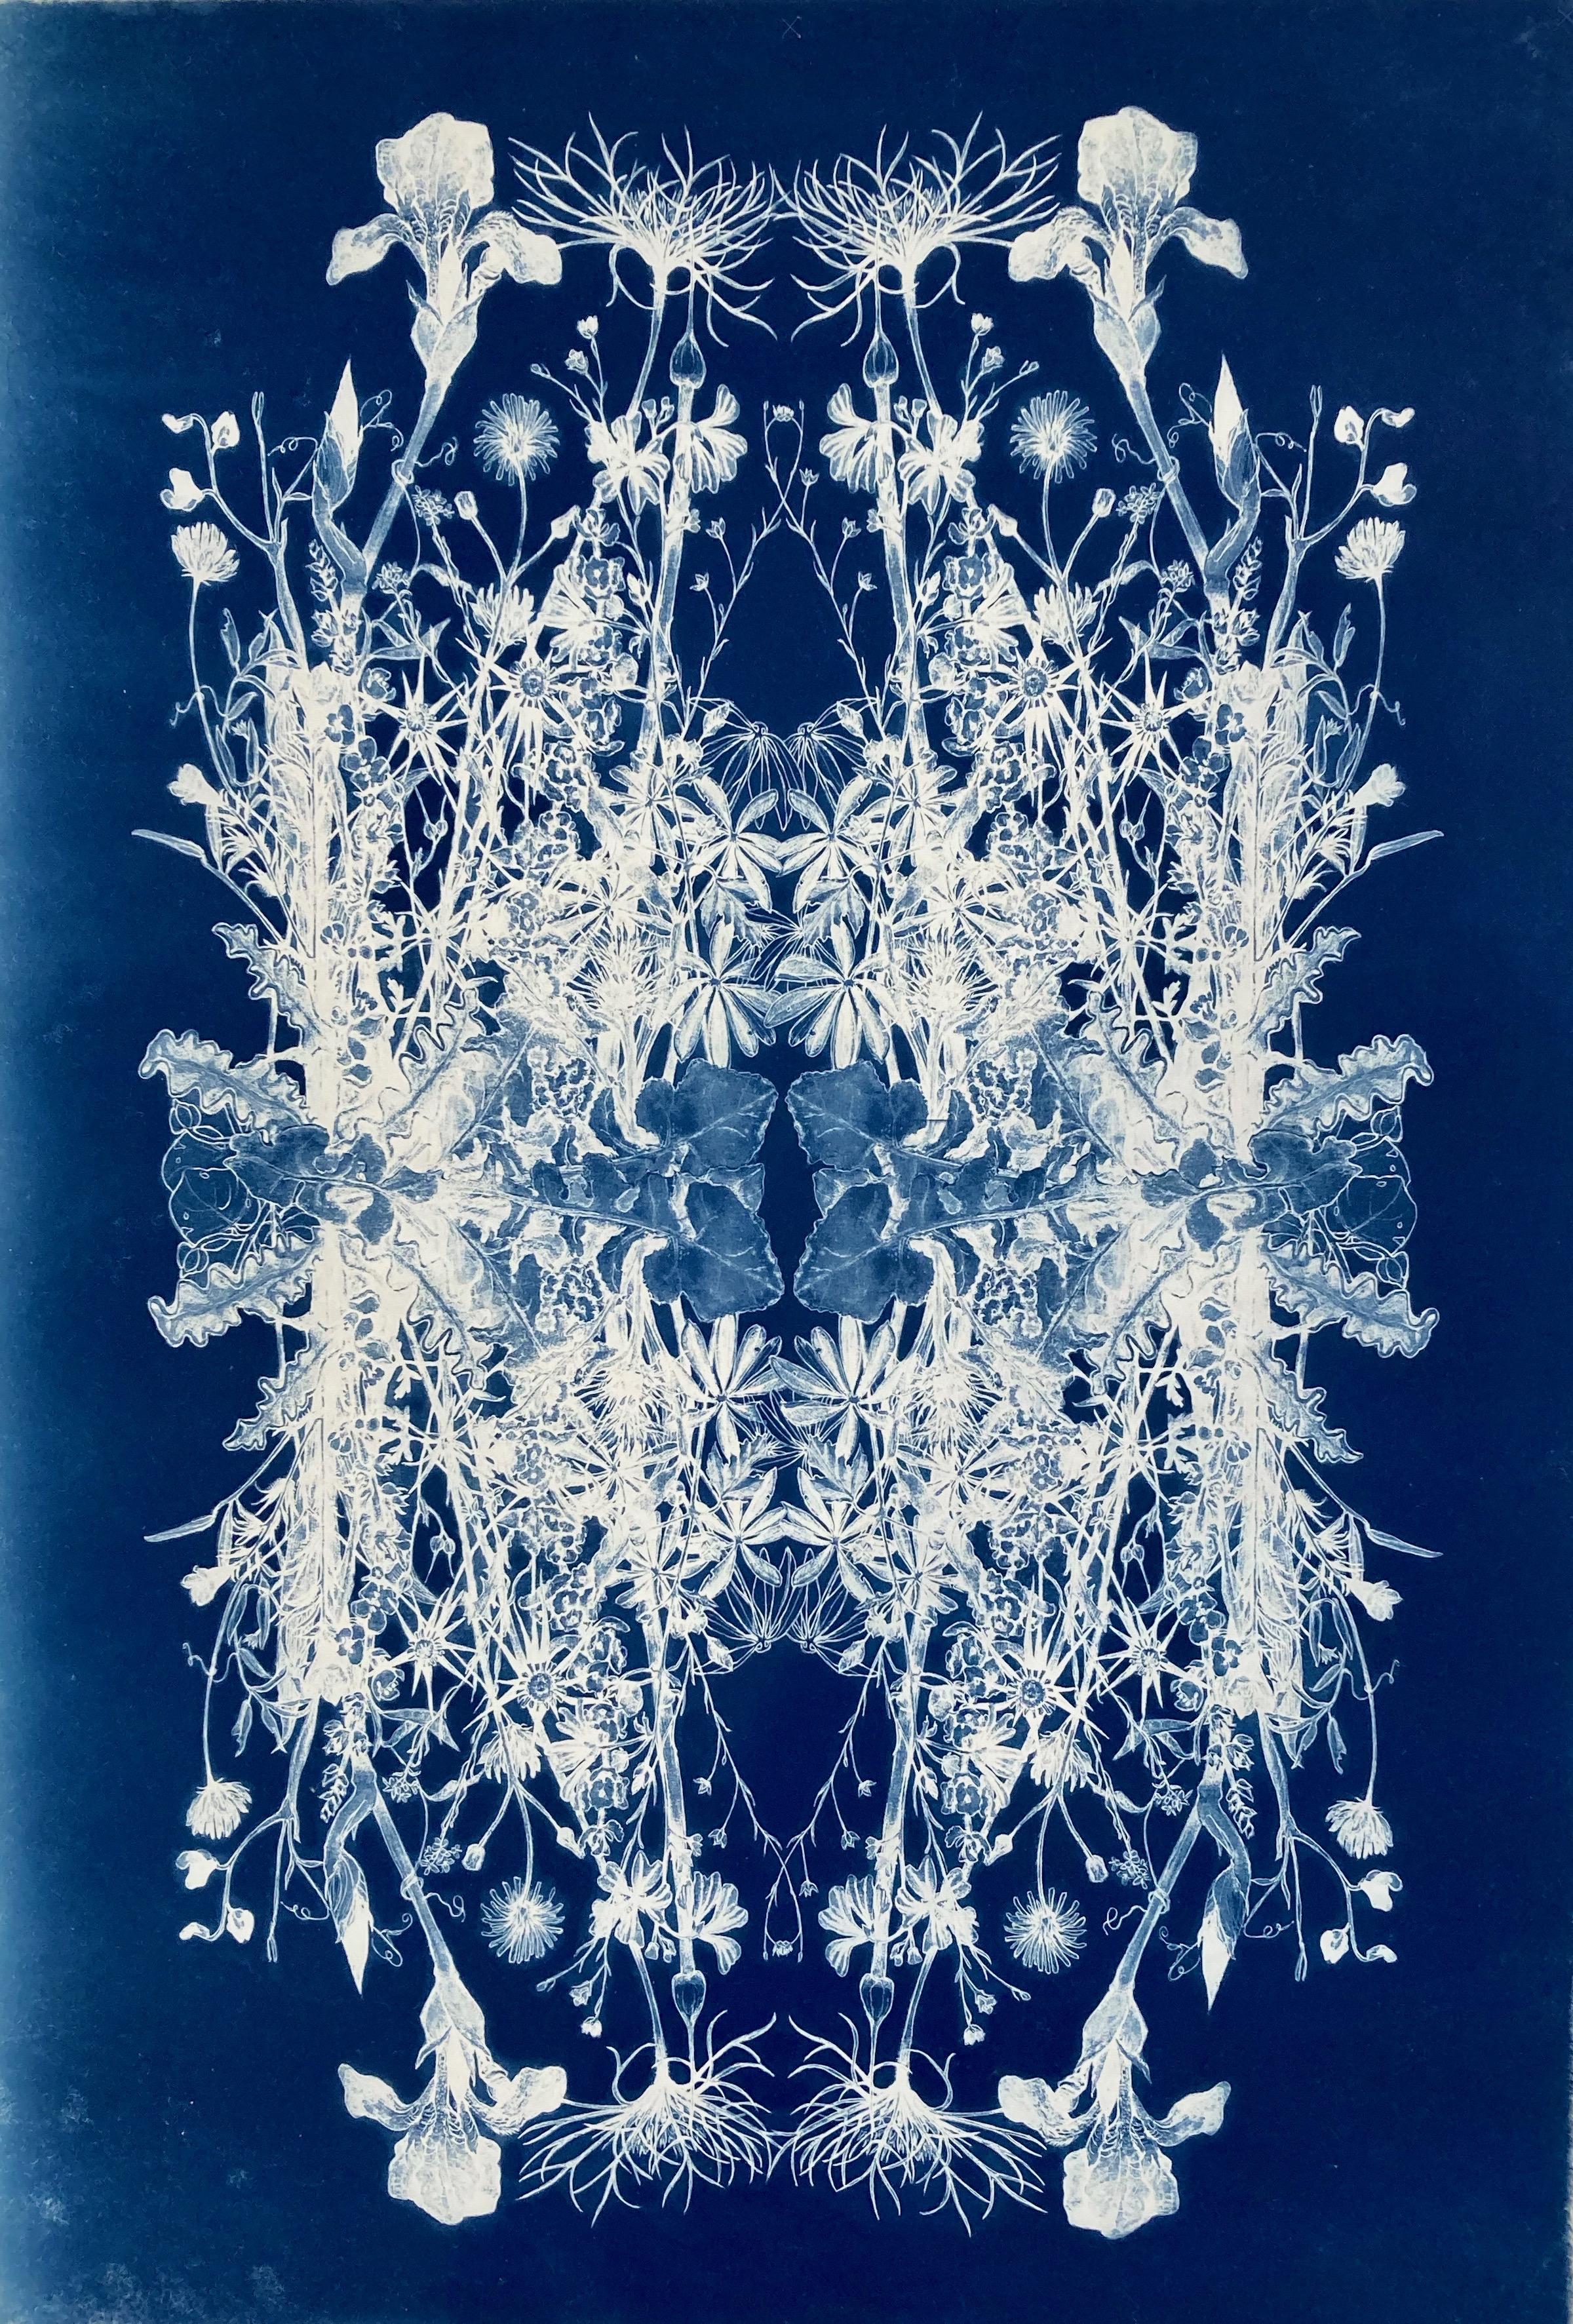 Still-Life Photograph Judith Allen-Efstathiou - 'Botanical Rhapsody'.   Photographie à motif floral réaliste/abstraite bleu/blanc  